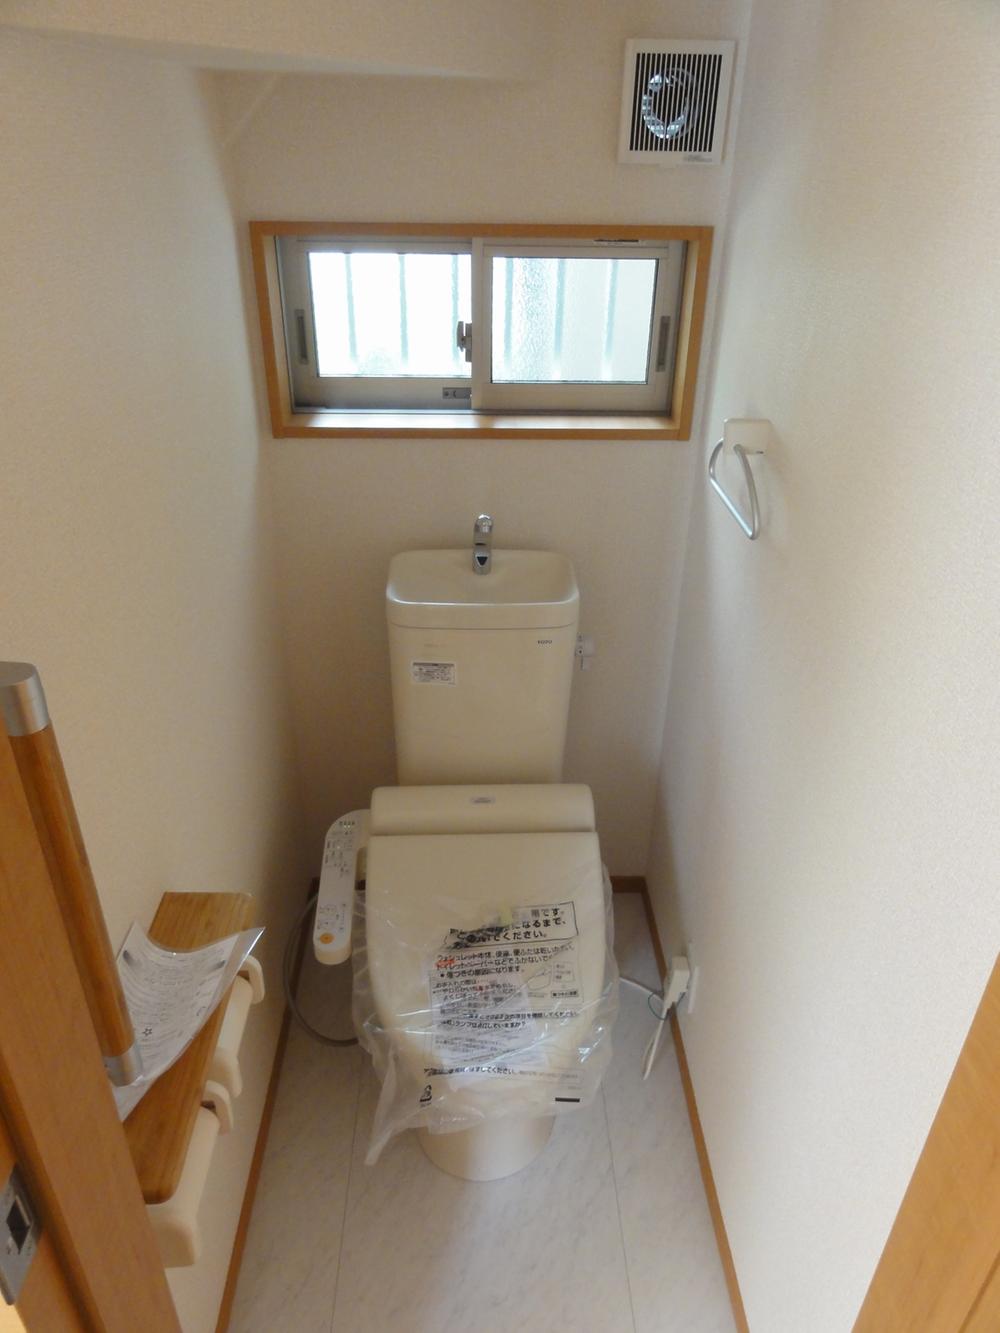 Toilet. With Washlet (1,2 Kaitomo)